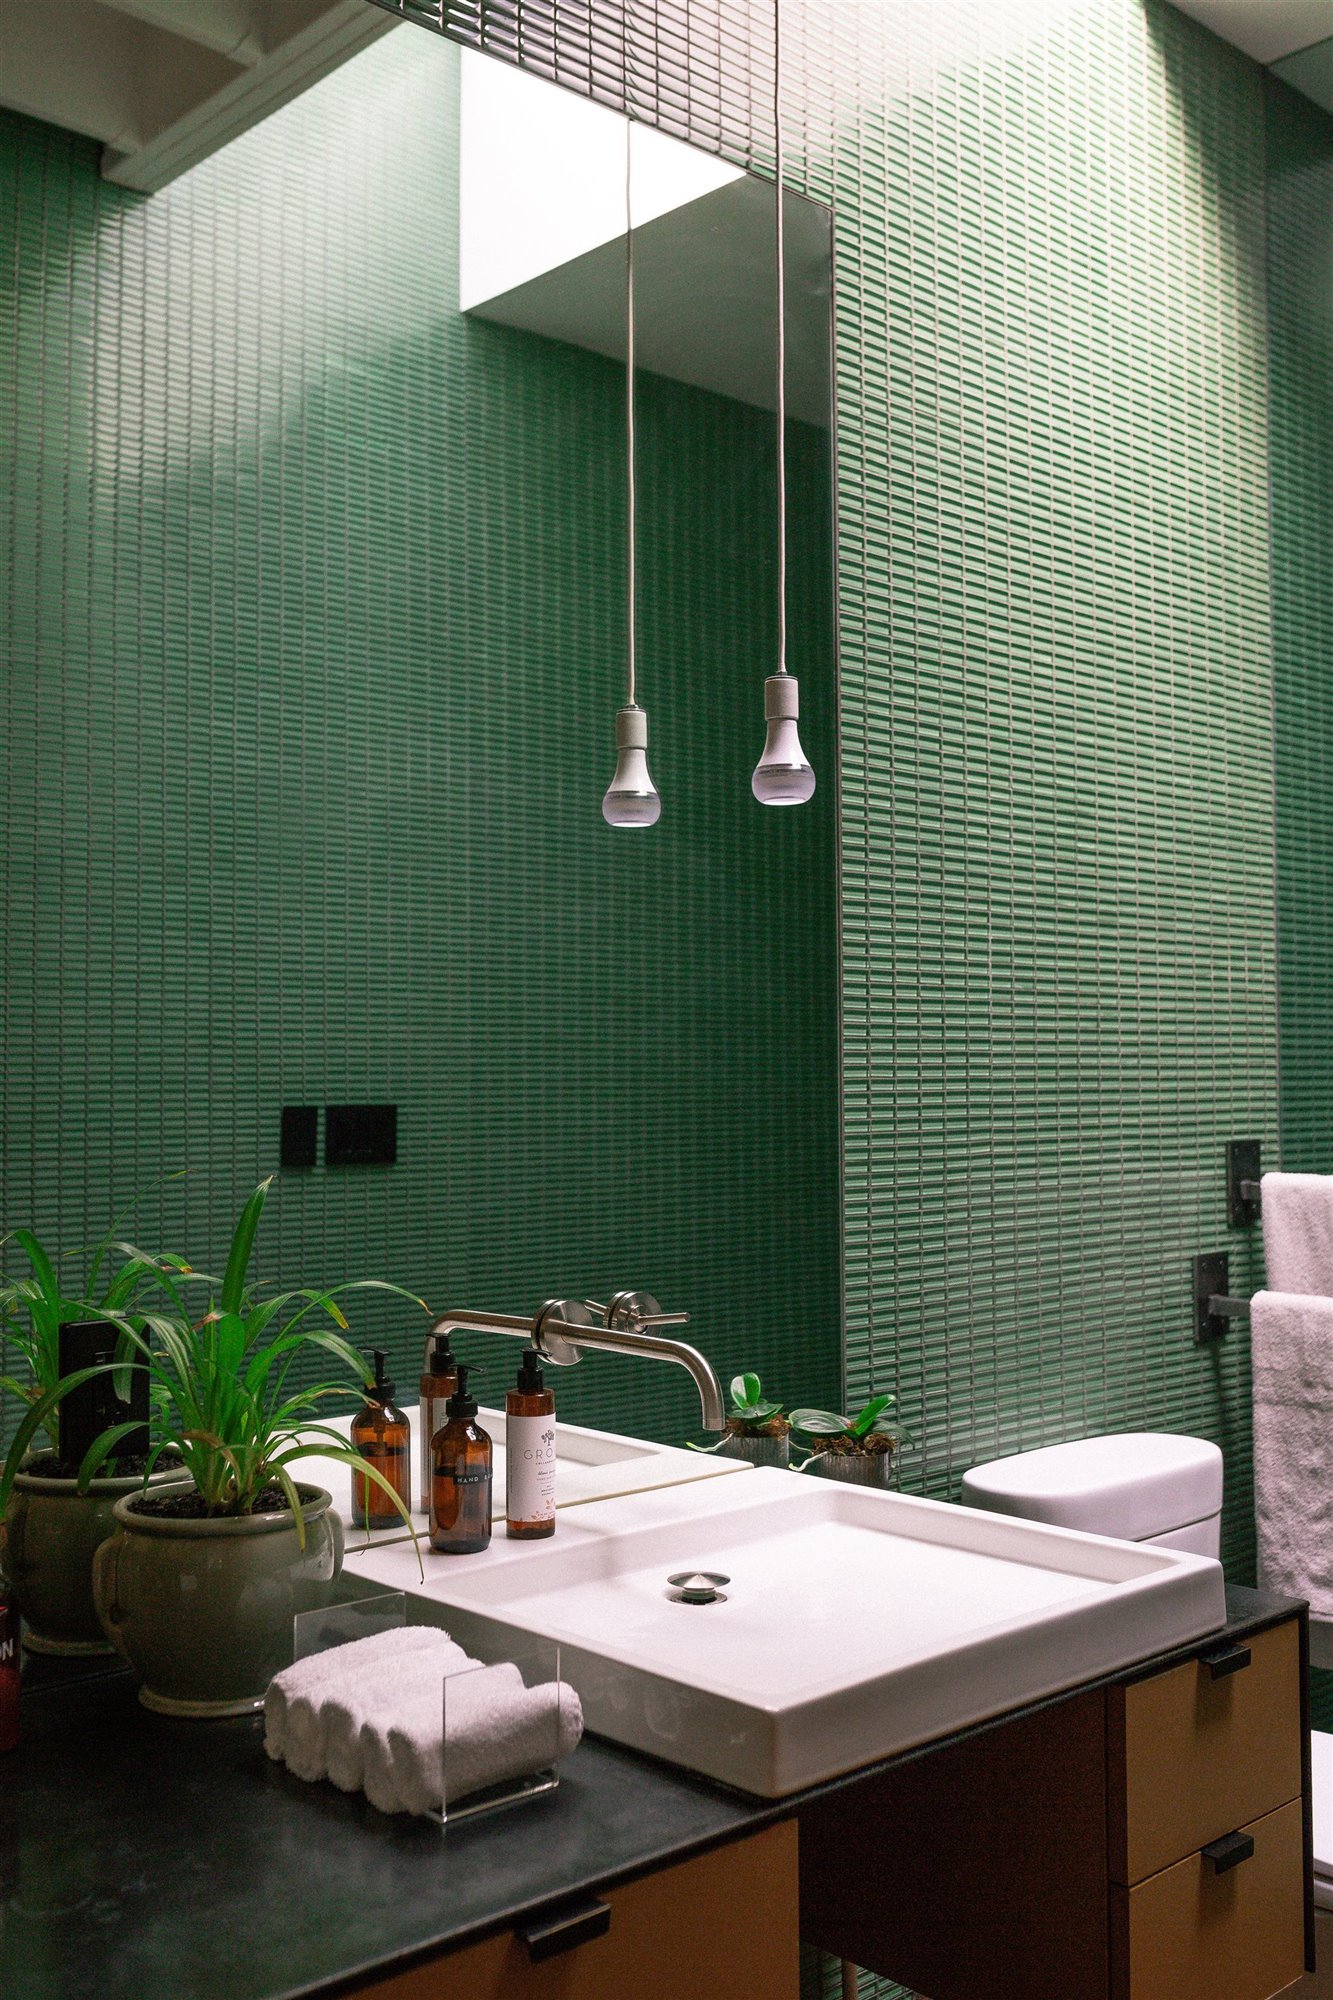 Baño con baldosas de baño verdes.